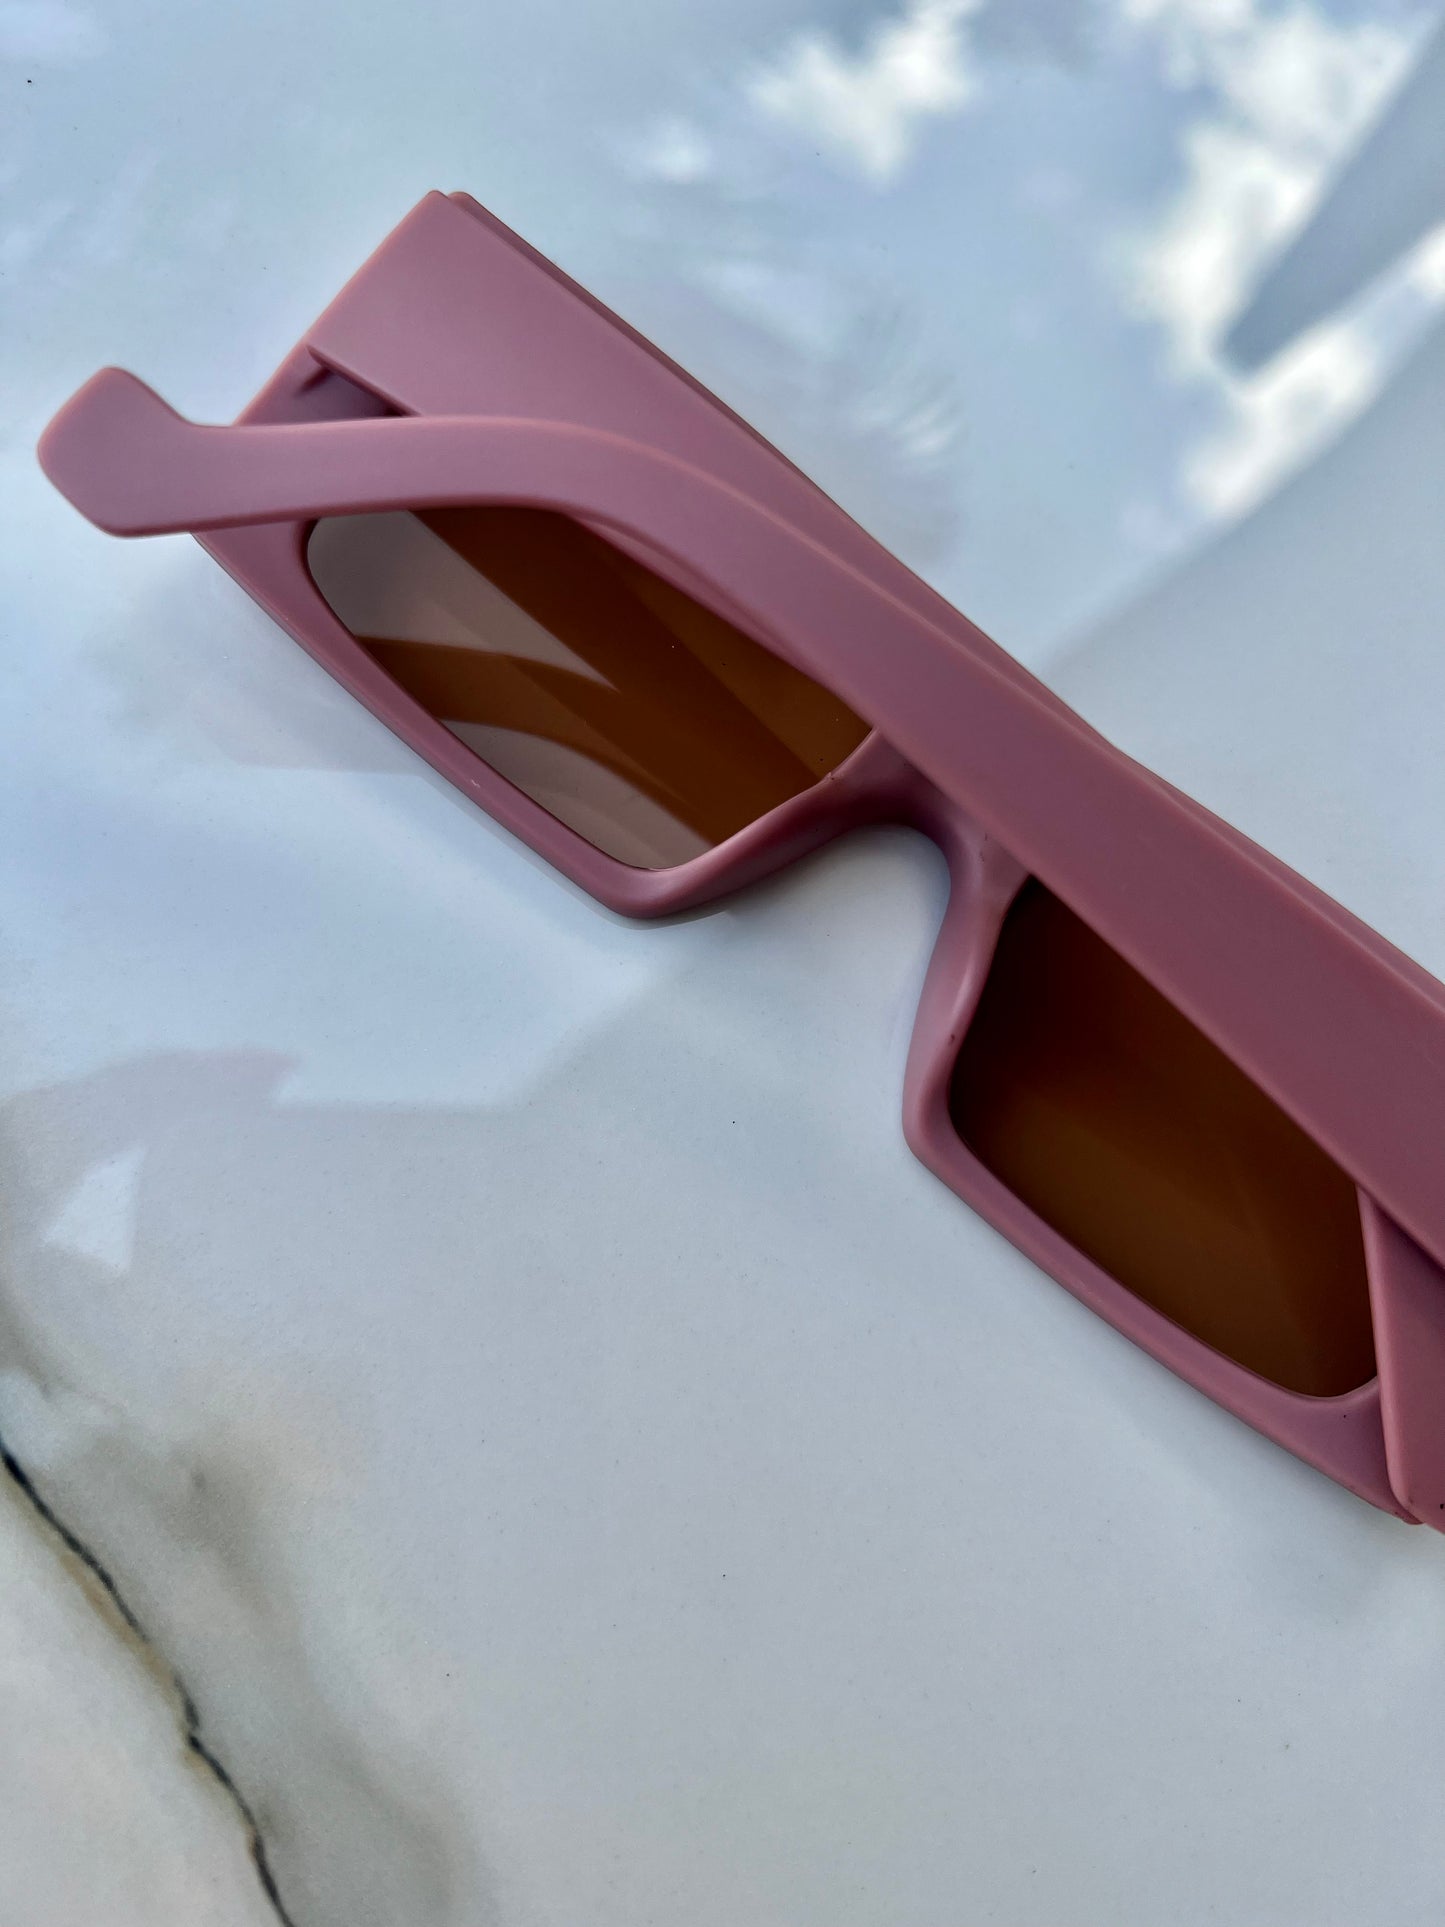 Piña Colada Sunglasses